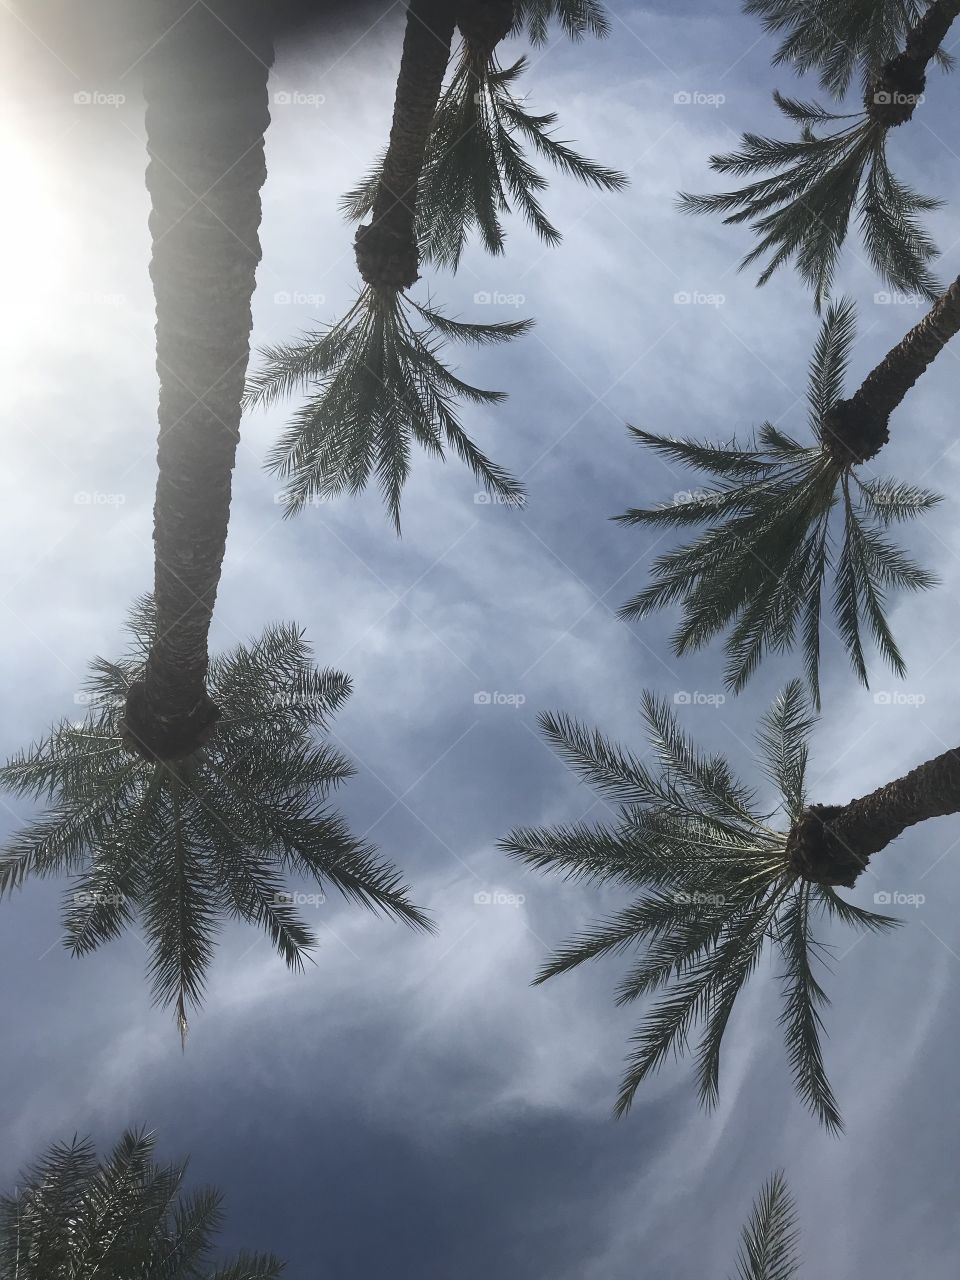 Palms in the desert. 